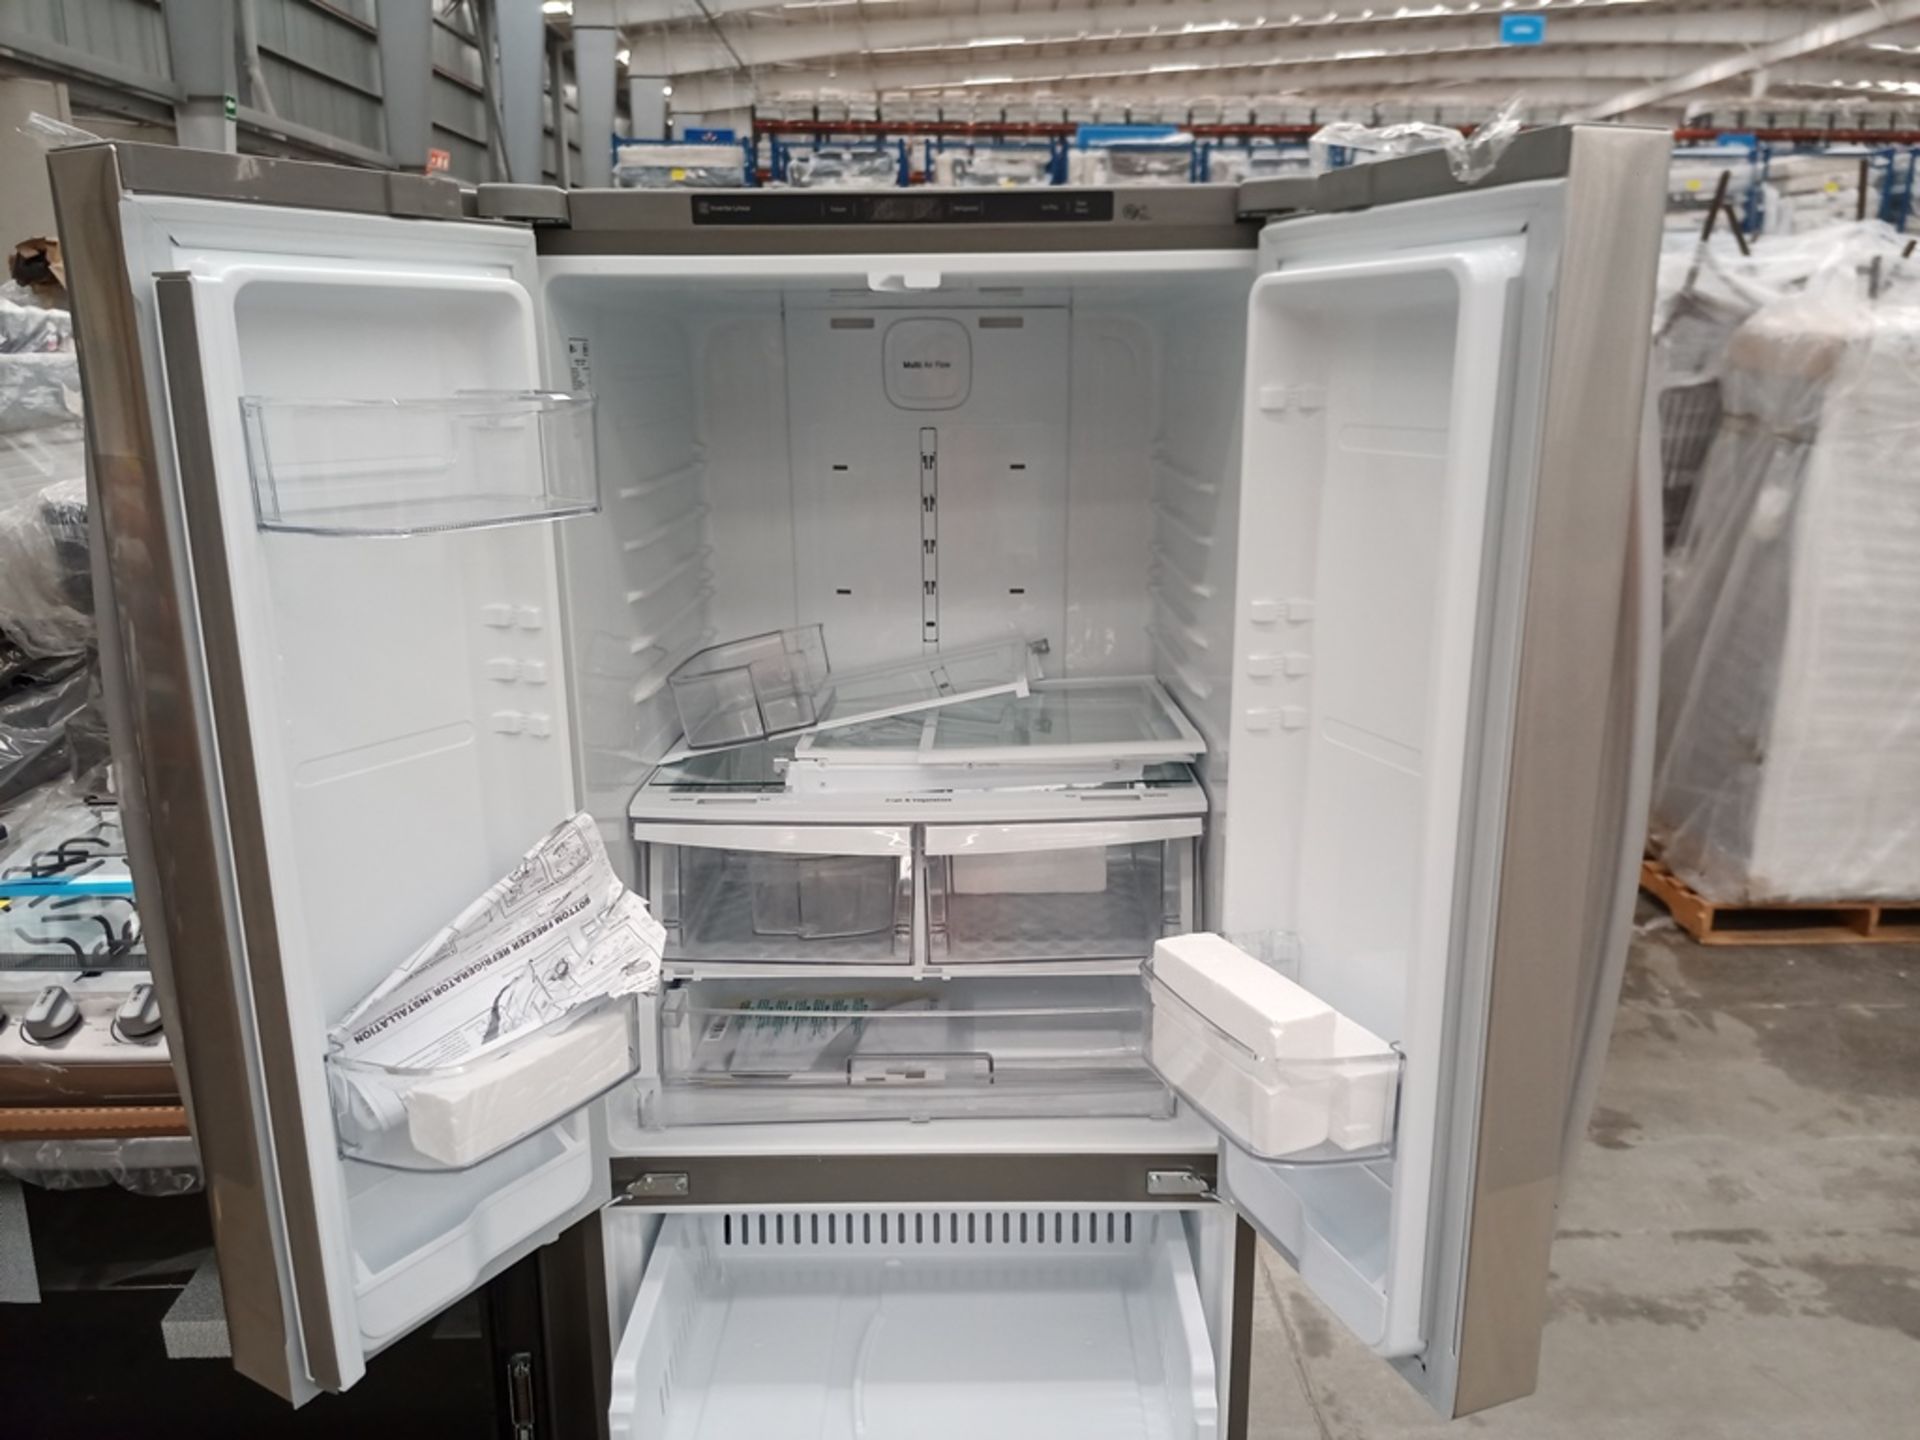 1 Refrigerador con dispensador de agua, Marca LG, Modelo GF22BGSK, Serie 112MRYA05834, Color Gris. - Image 7 of 10